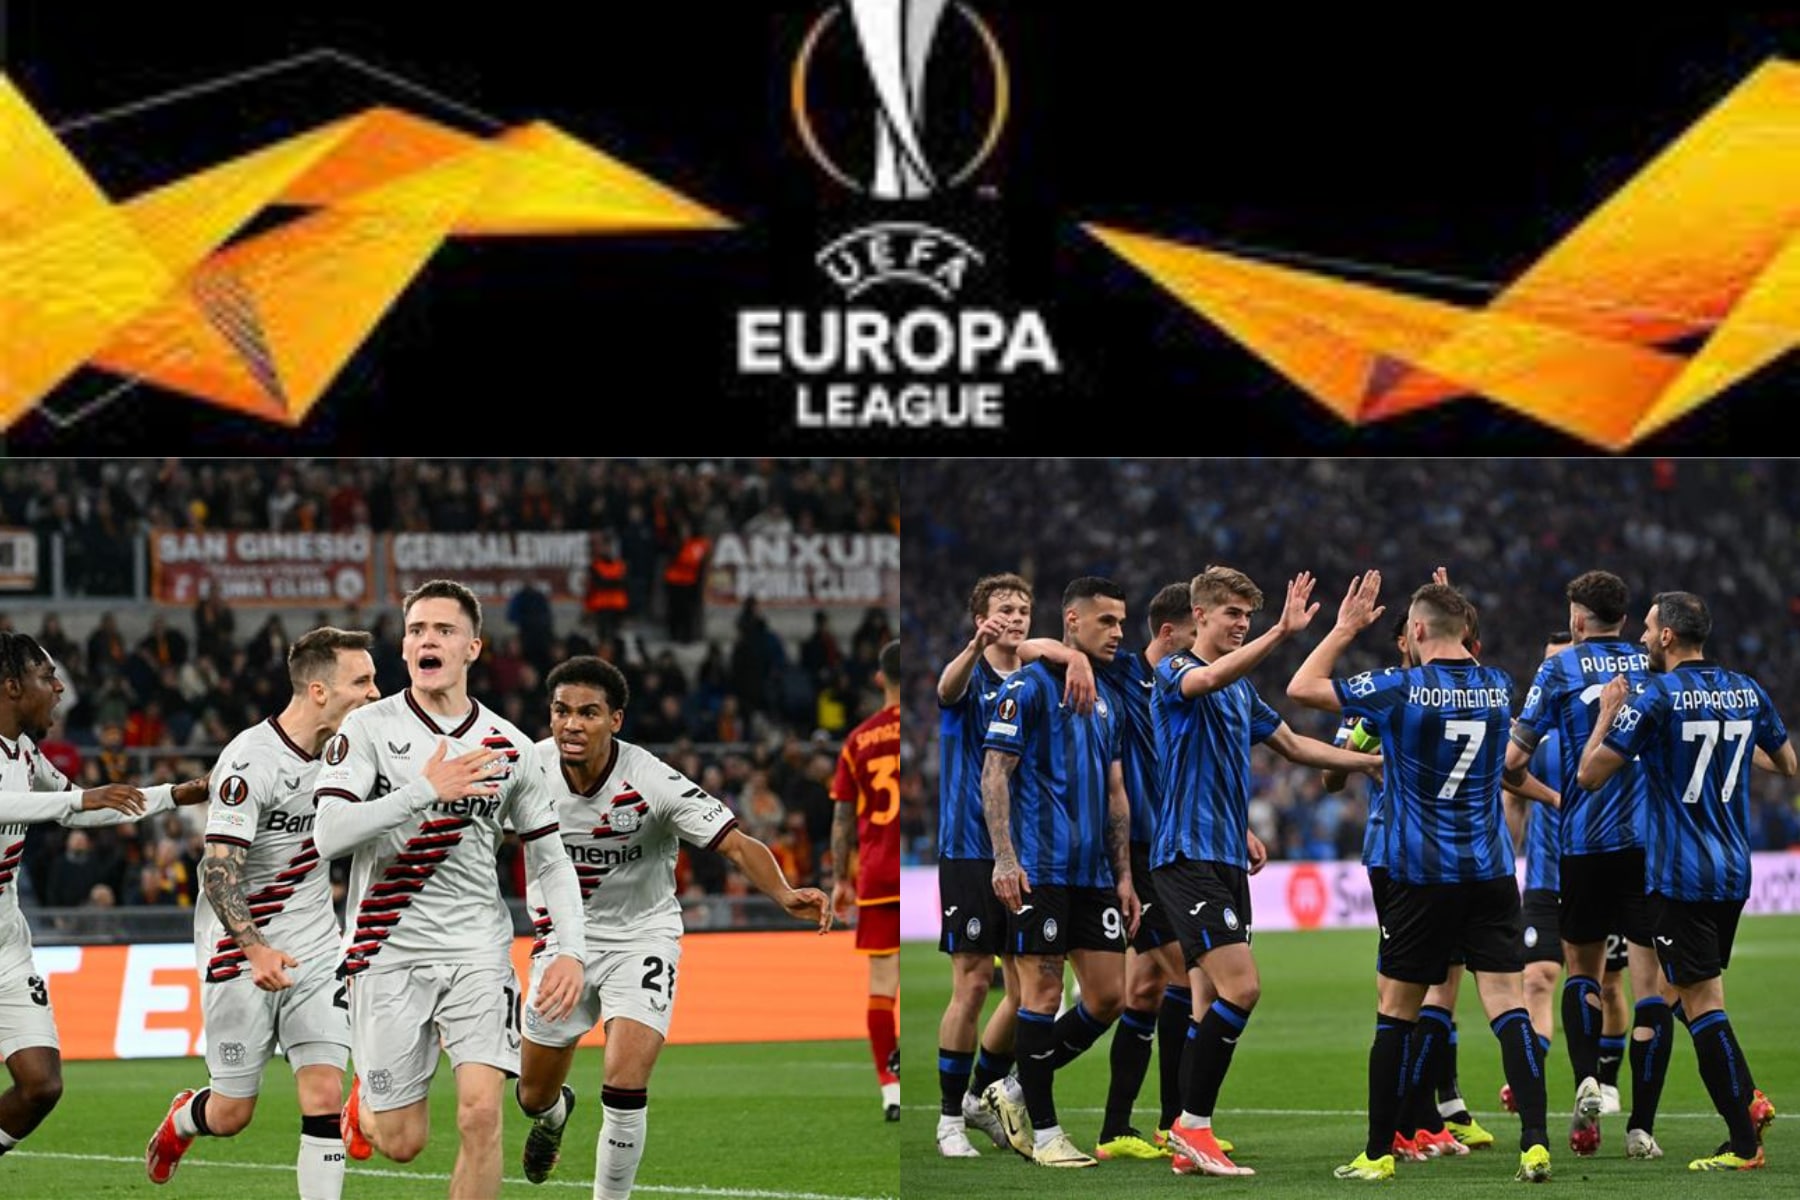   الدوري الأوروبي: روما يسقط وأتلانتا يعود بالتعادل 